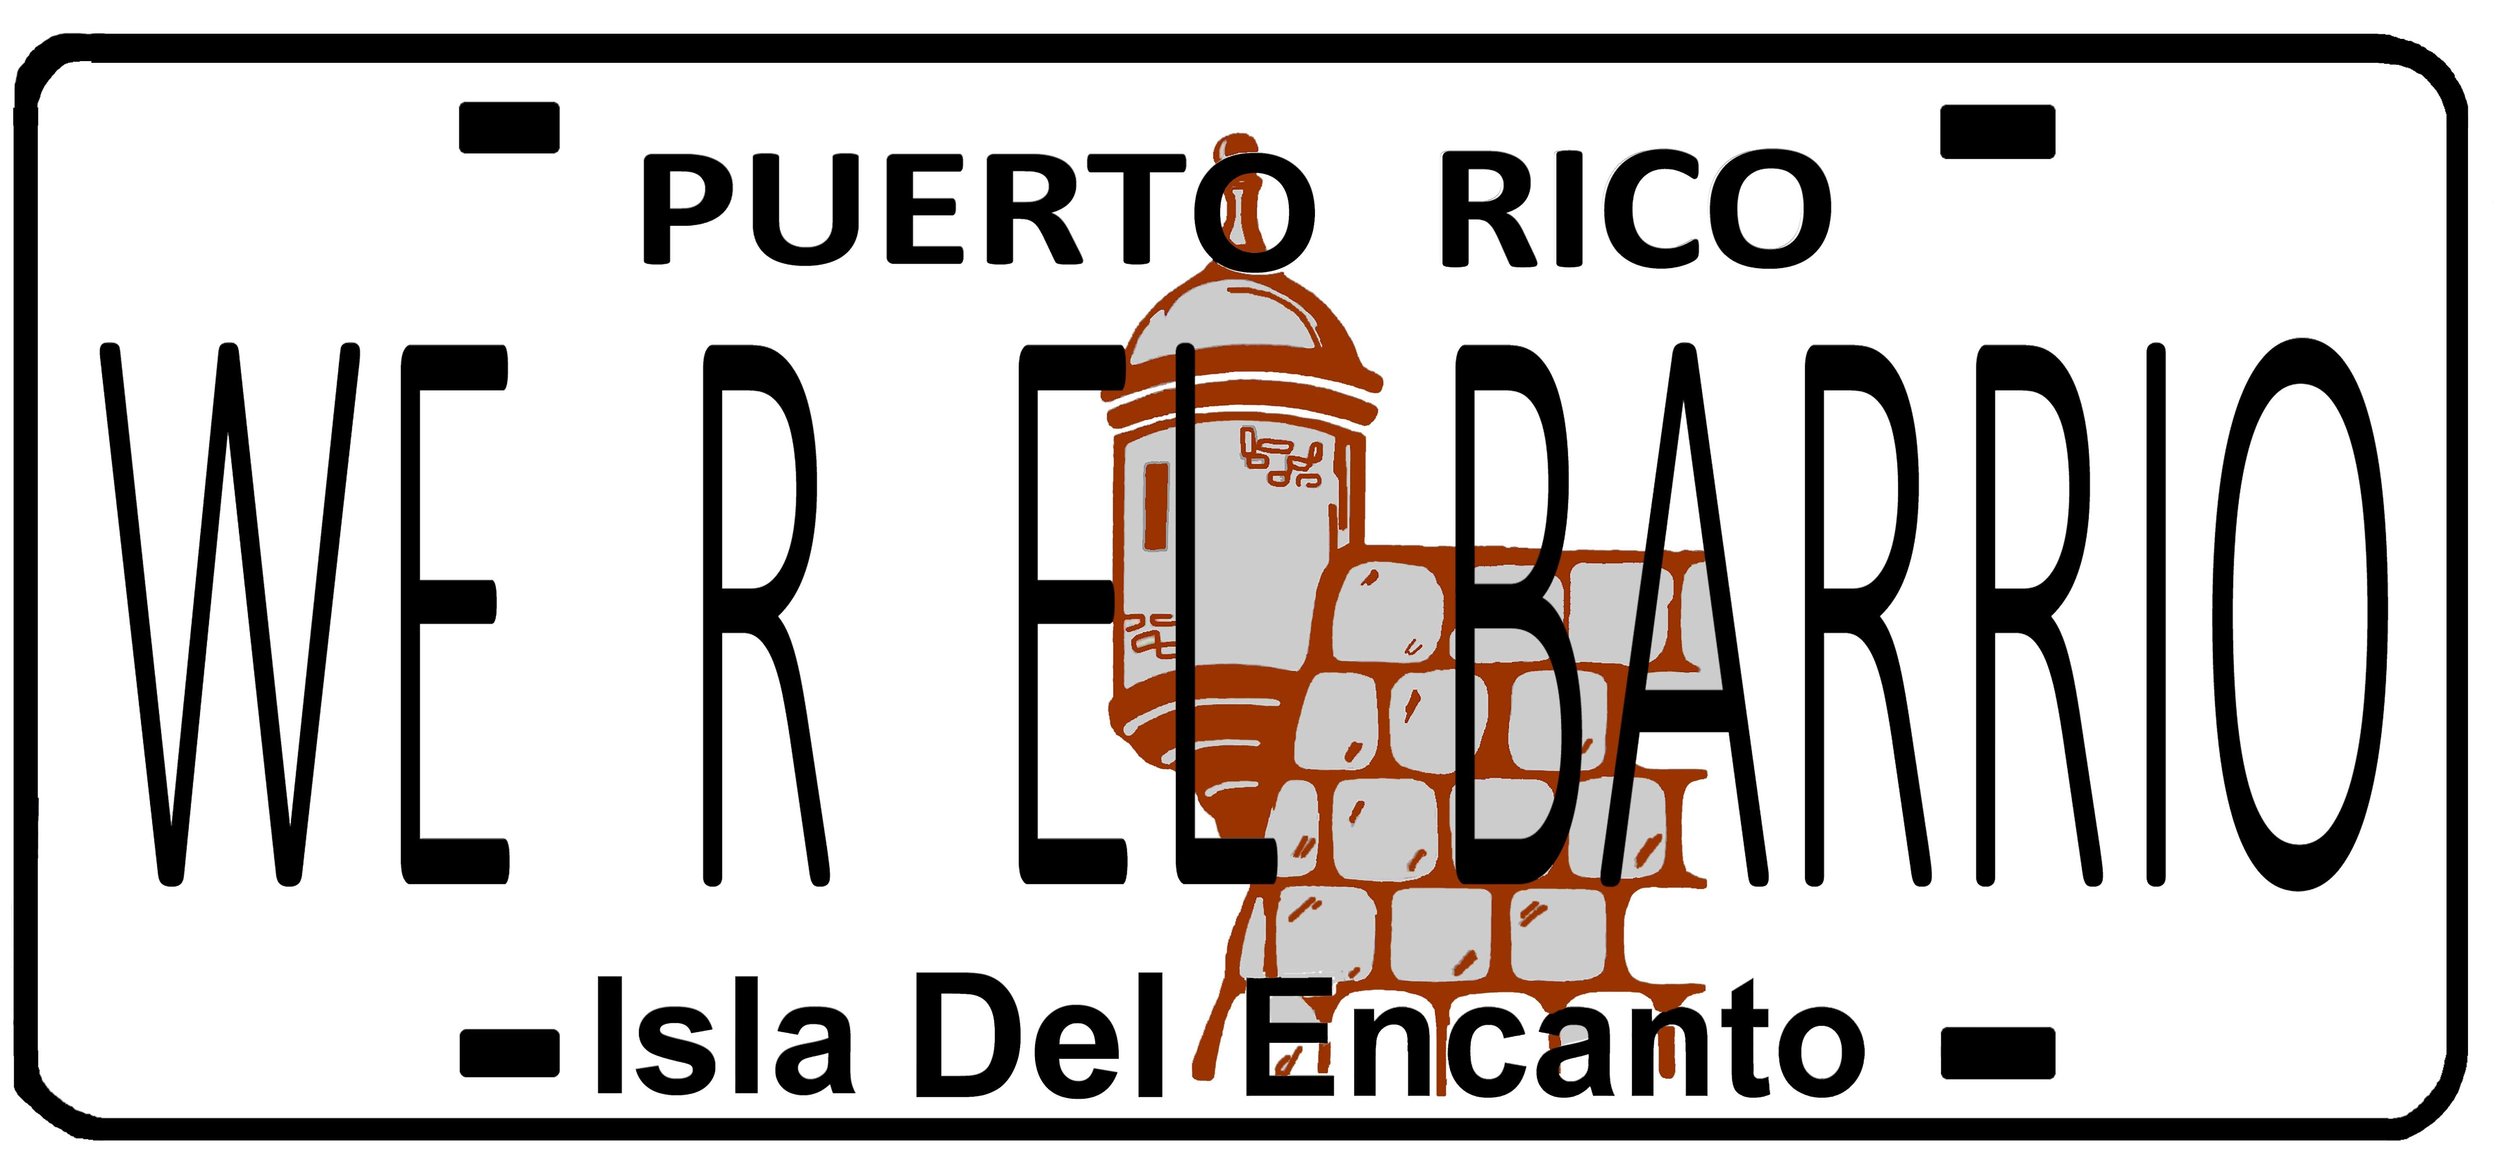 WE R EL BARRIO logo.jpg